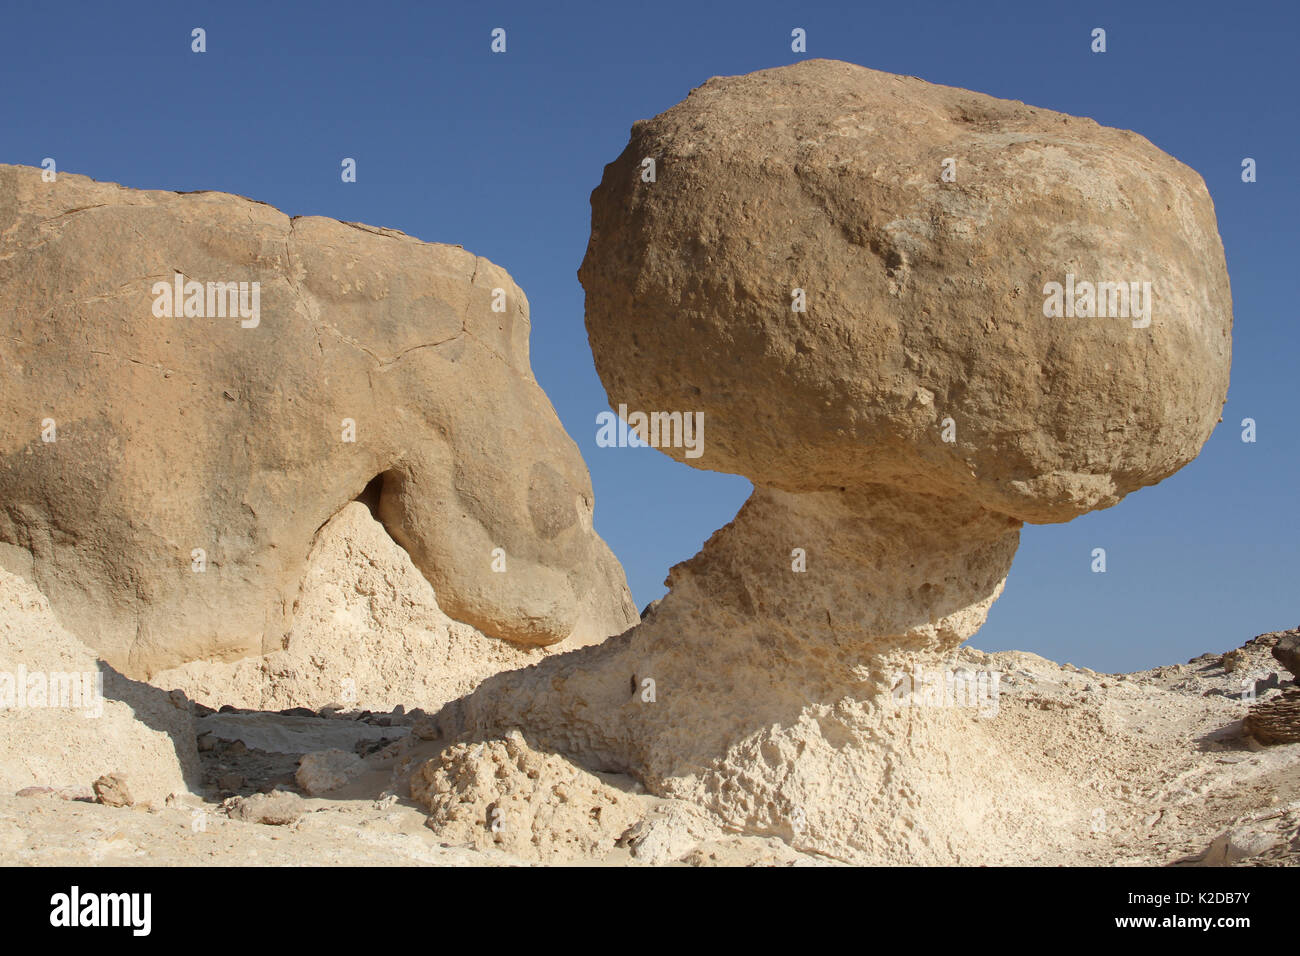 Rock Garden bei Ad Duqm, mit Balancing Rock, einem beliebten touristischen Ort, Oman, November 2012. Stockfoto